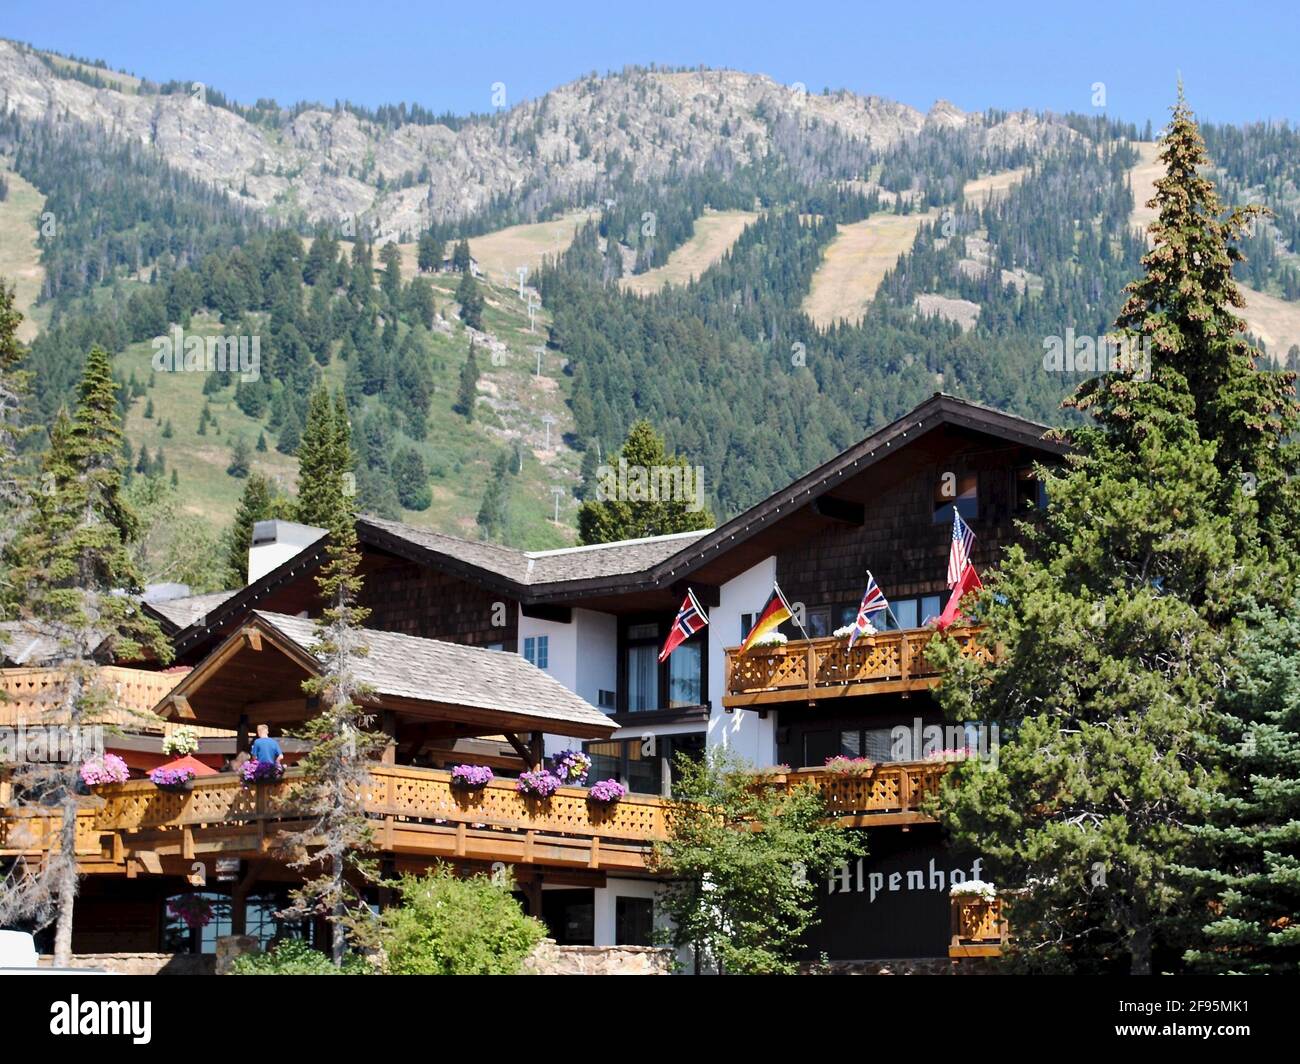 Jackson Hole, Wyoming: L'hotel Alpenhof è una struttura sciistica in stile alpino europeo situata ai piedi del Jackson Hole Mountain Resort. Foto Stock